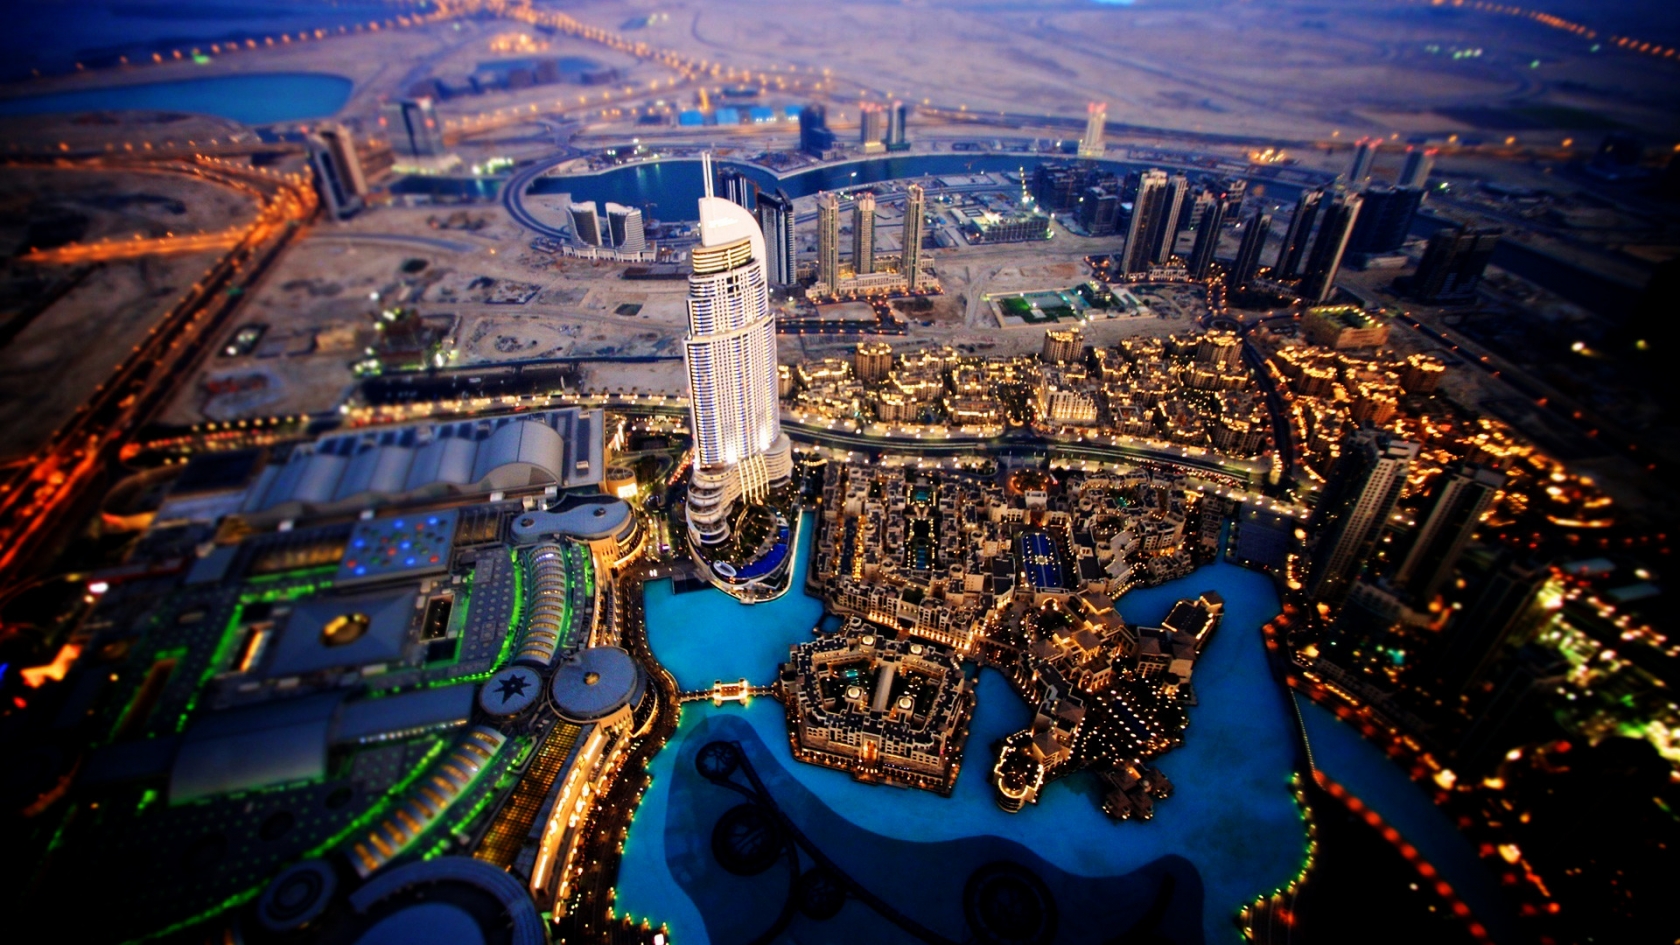 Dubai Sky View for 1680 x 945 HDTV resolution